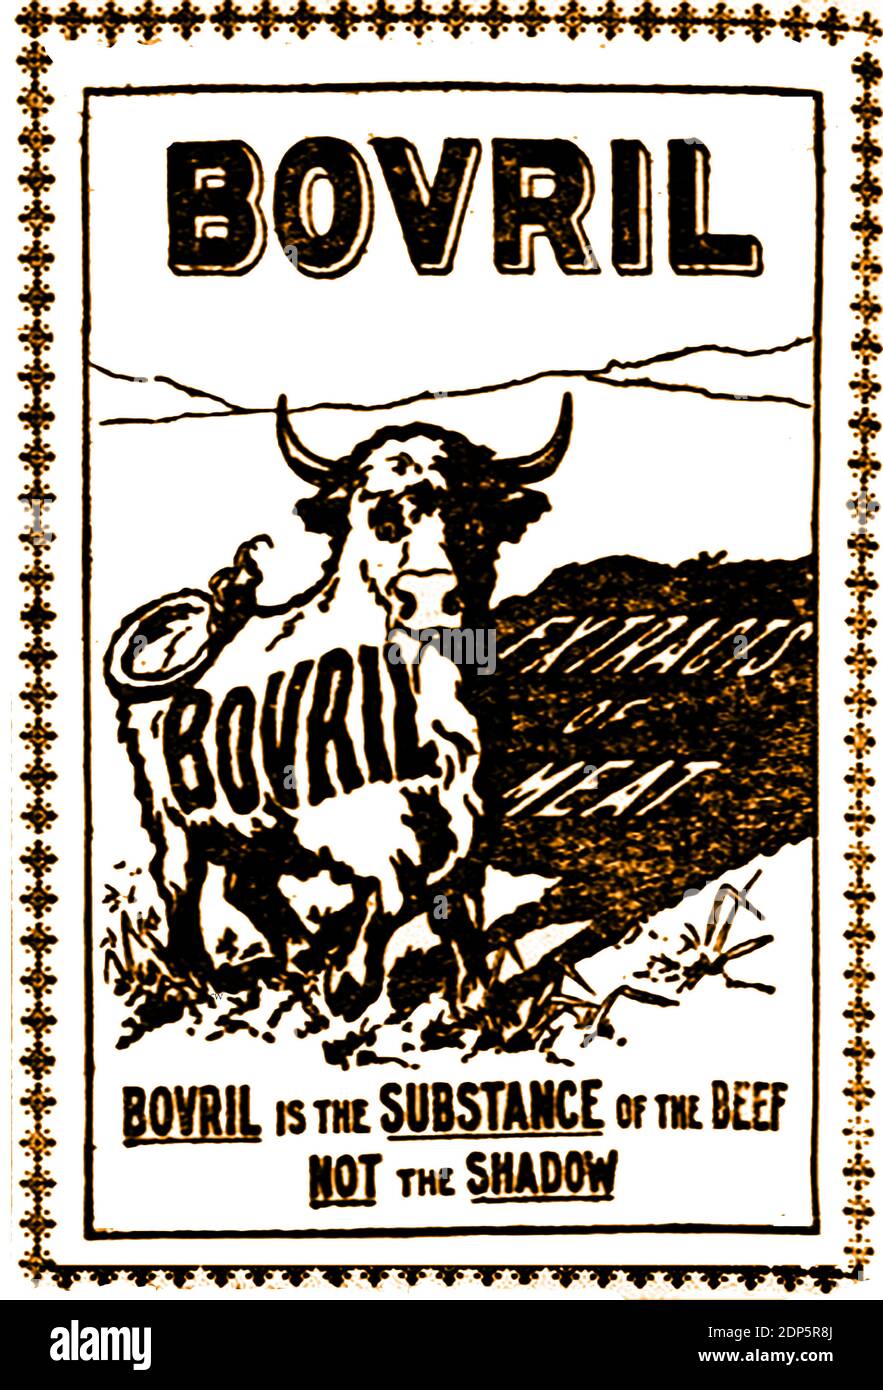 Eine britische c1899 Zeitung Werbung für Bovril Fleisch-Extrakt . Es zeigte den Bovril Bull und die Behauptung, dass "Bovril die Substanz des Rindfleisches ist, nicht der Schatten". 1870, während des französisch-preußischen Krieges, befahl Napoleon III. Eine Million Dosen Rindfleisch, um seine Truppen zu ernähren. Die Aufgabe ging an John Lawson Johnston, ein Schotte, der in Kanada lebt. Transport und Lagerung waren ein Problem, und Johnston schuf einen Extrakt, der als "Johnston's Fluid Beef" bekannt ist, später Bovril genannt, der leicht riesige Verkäufe in britischen Lebensmittelmärkten, öffentlichen Häusern und Chemikern fand (für die Verwendung als Tonikum für Invaliden). Stockfoto